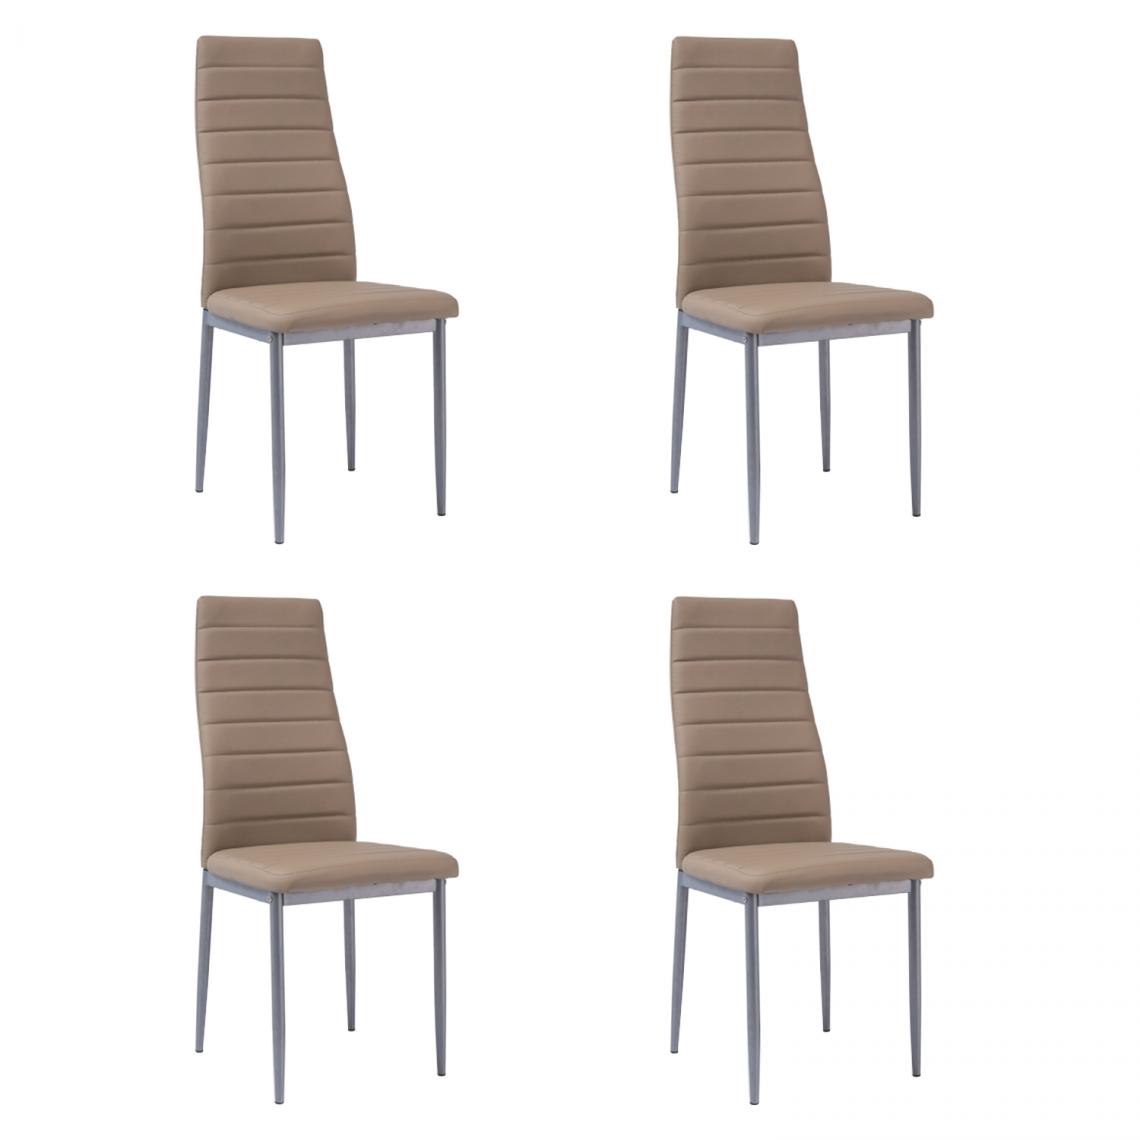 Hucoco - WERI - Lot de 4 chaises minimalistes - 96x40x38 cm - Revêtement similicuir - Chaise salon - Marron - Chaises